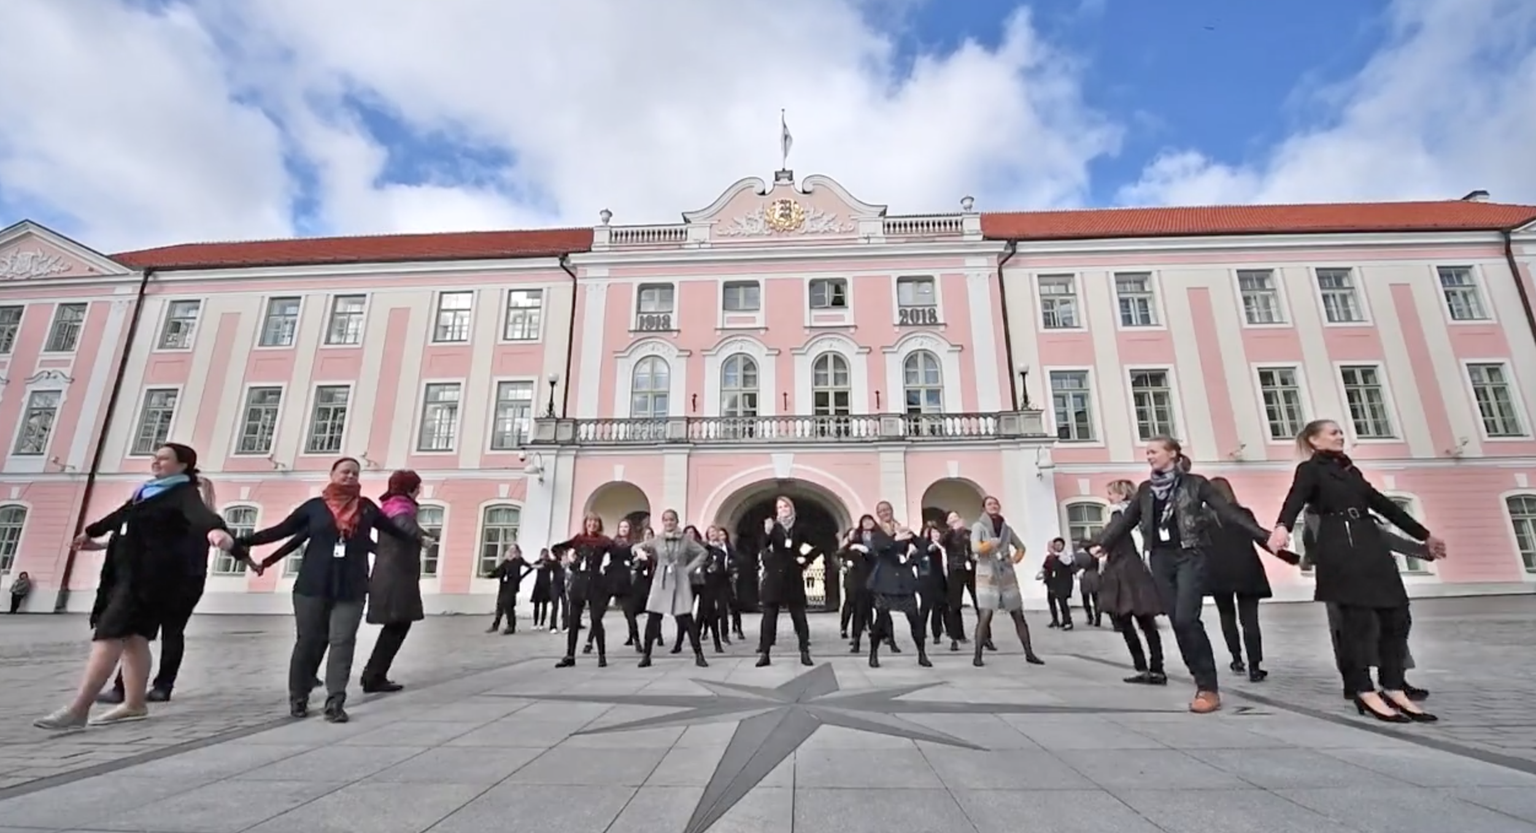 Vaata ka allolevast videost, kuidas Riigikogu töötjad Eestil auks tantsisid.